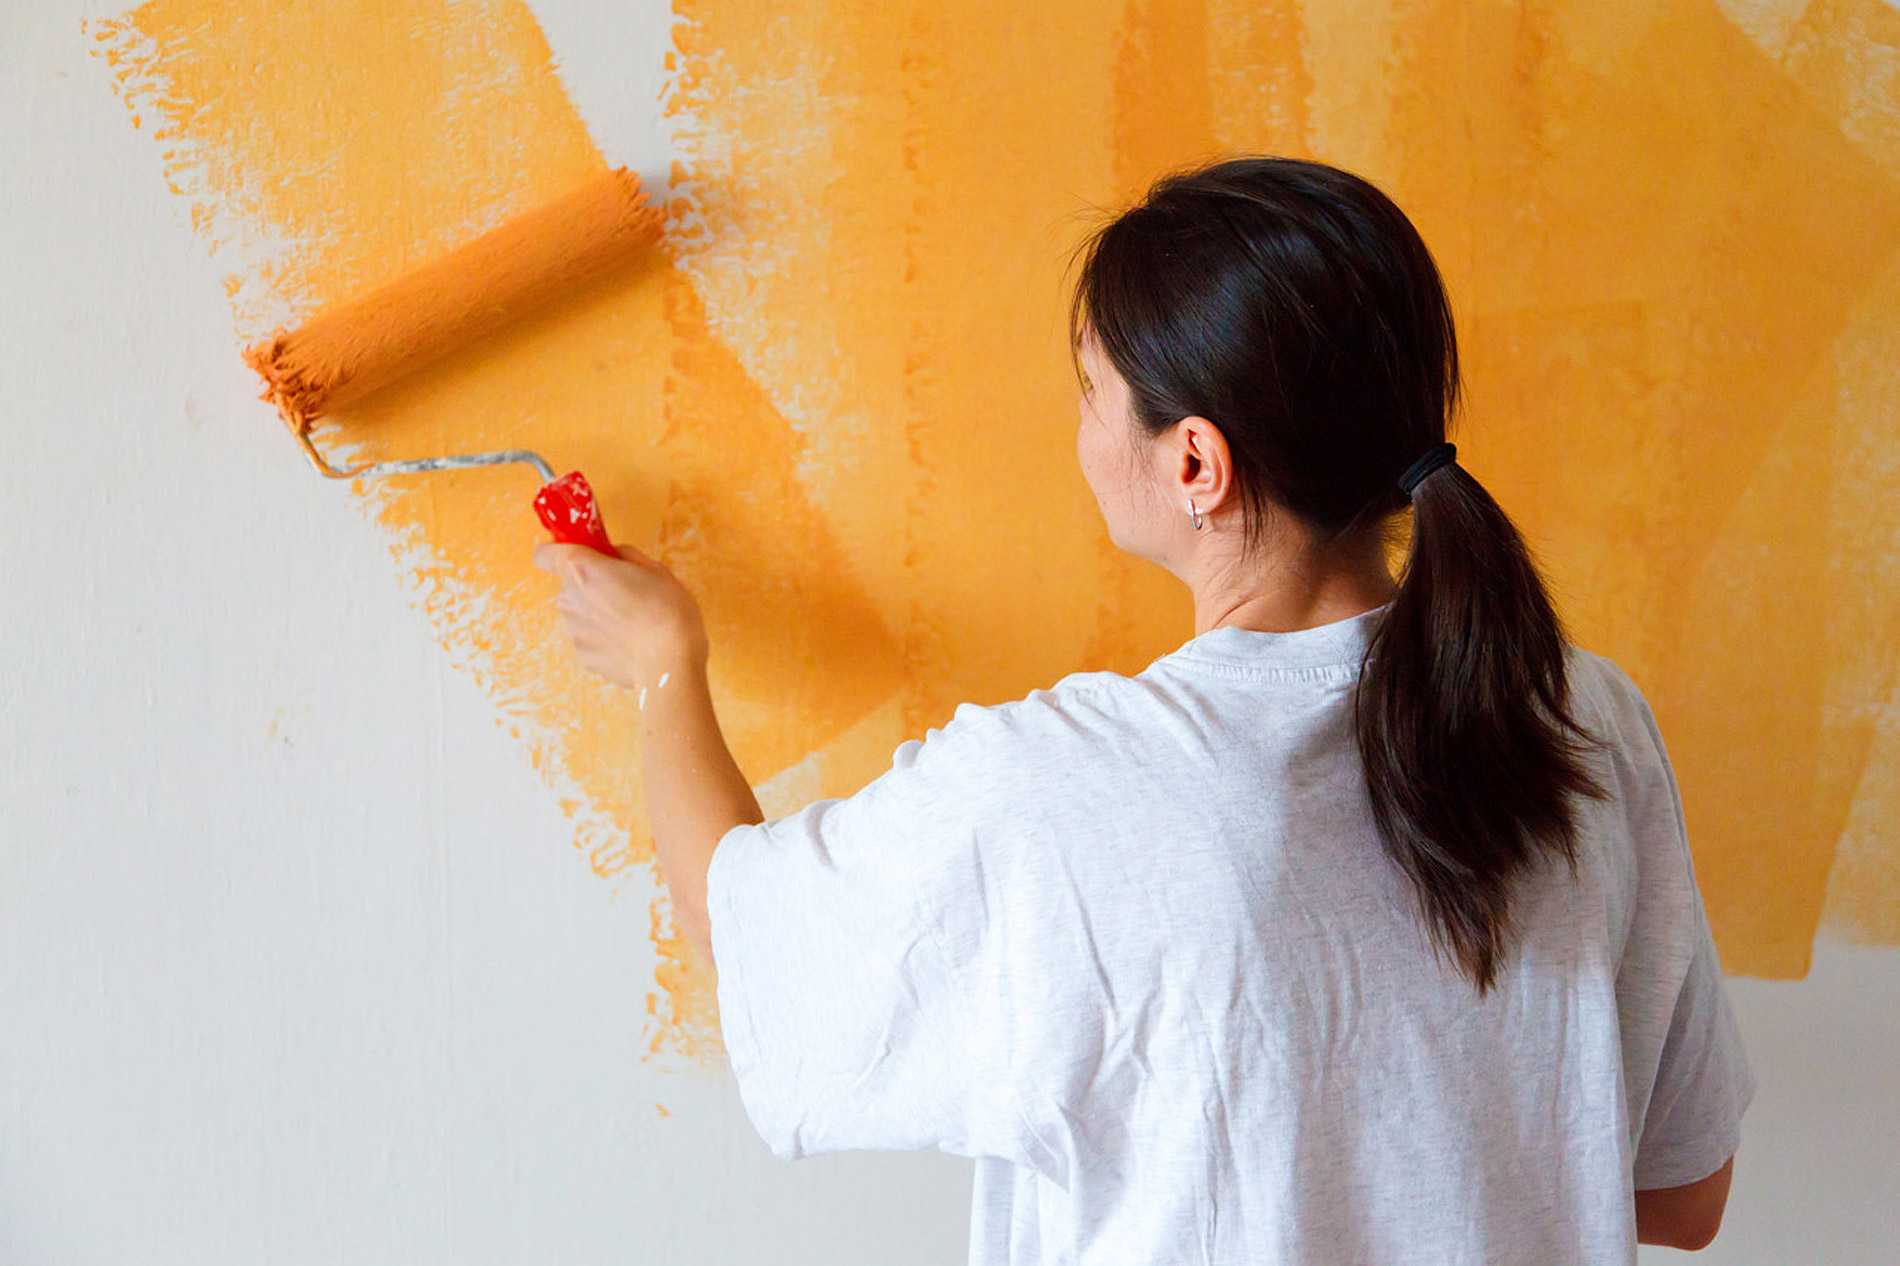 Как сделать идеальную стену под дальнейшую покраску: как подготовить, порядок работ своими руками и руководство, что нужно сделать